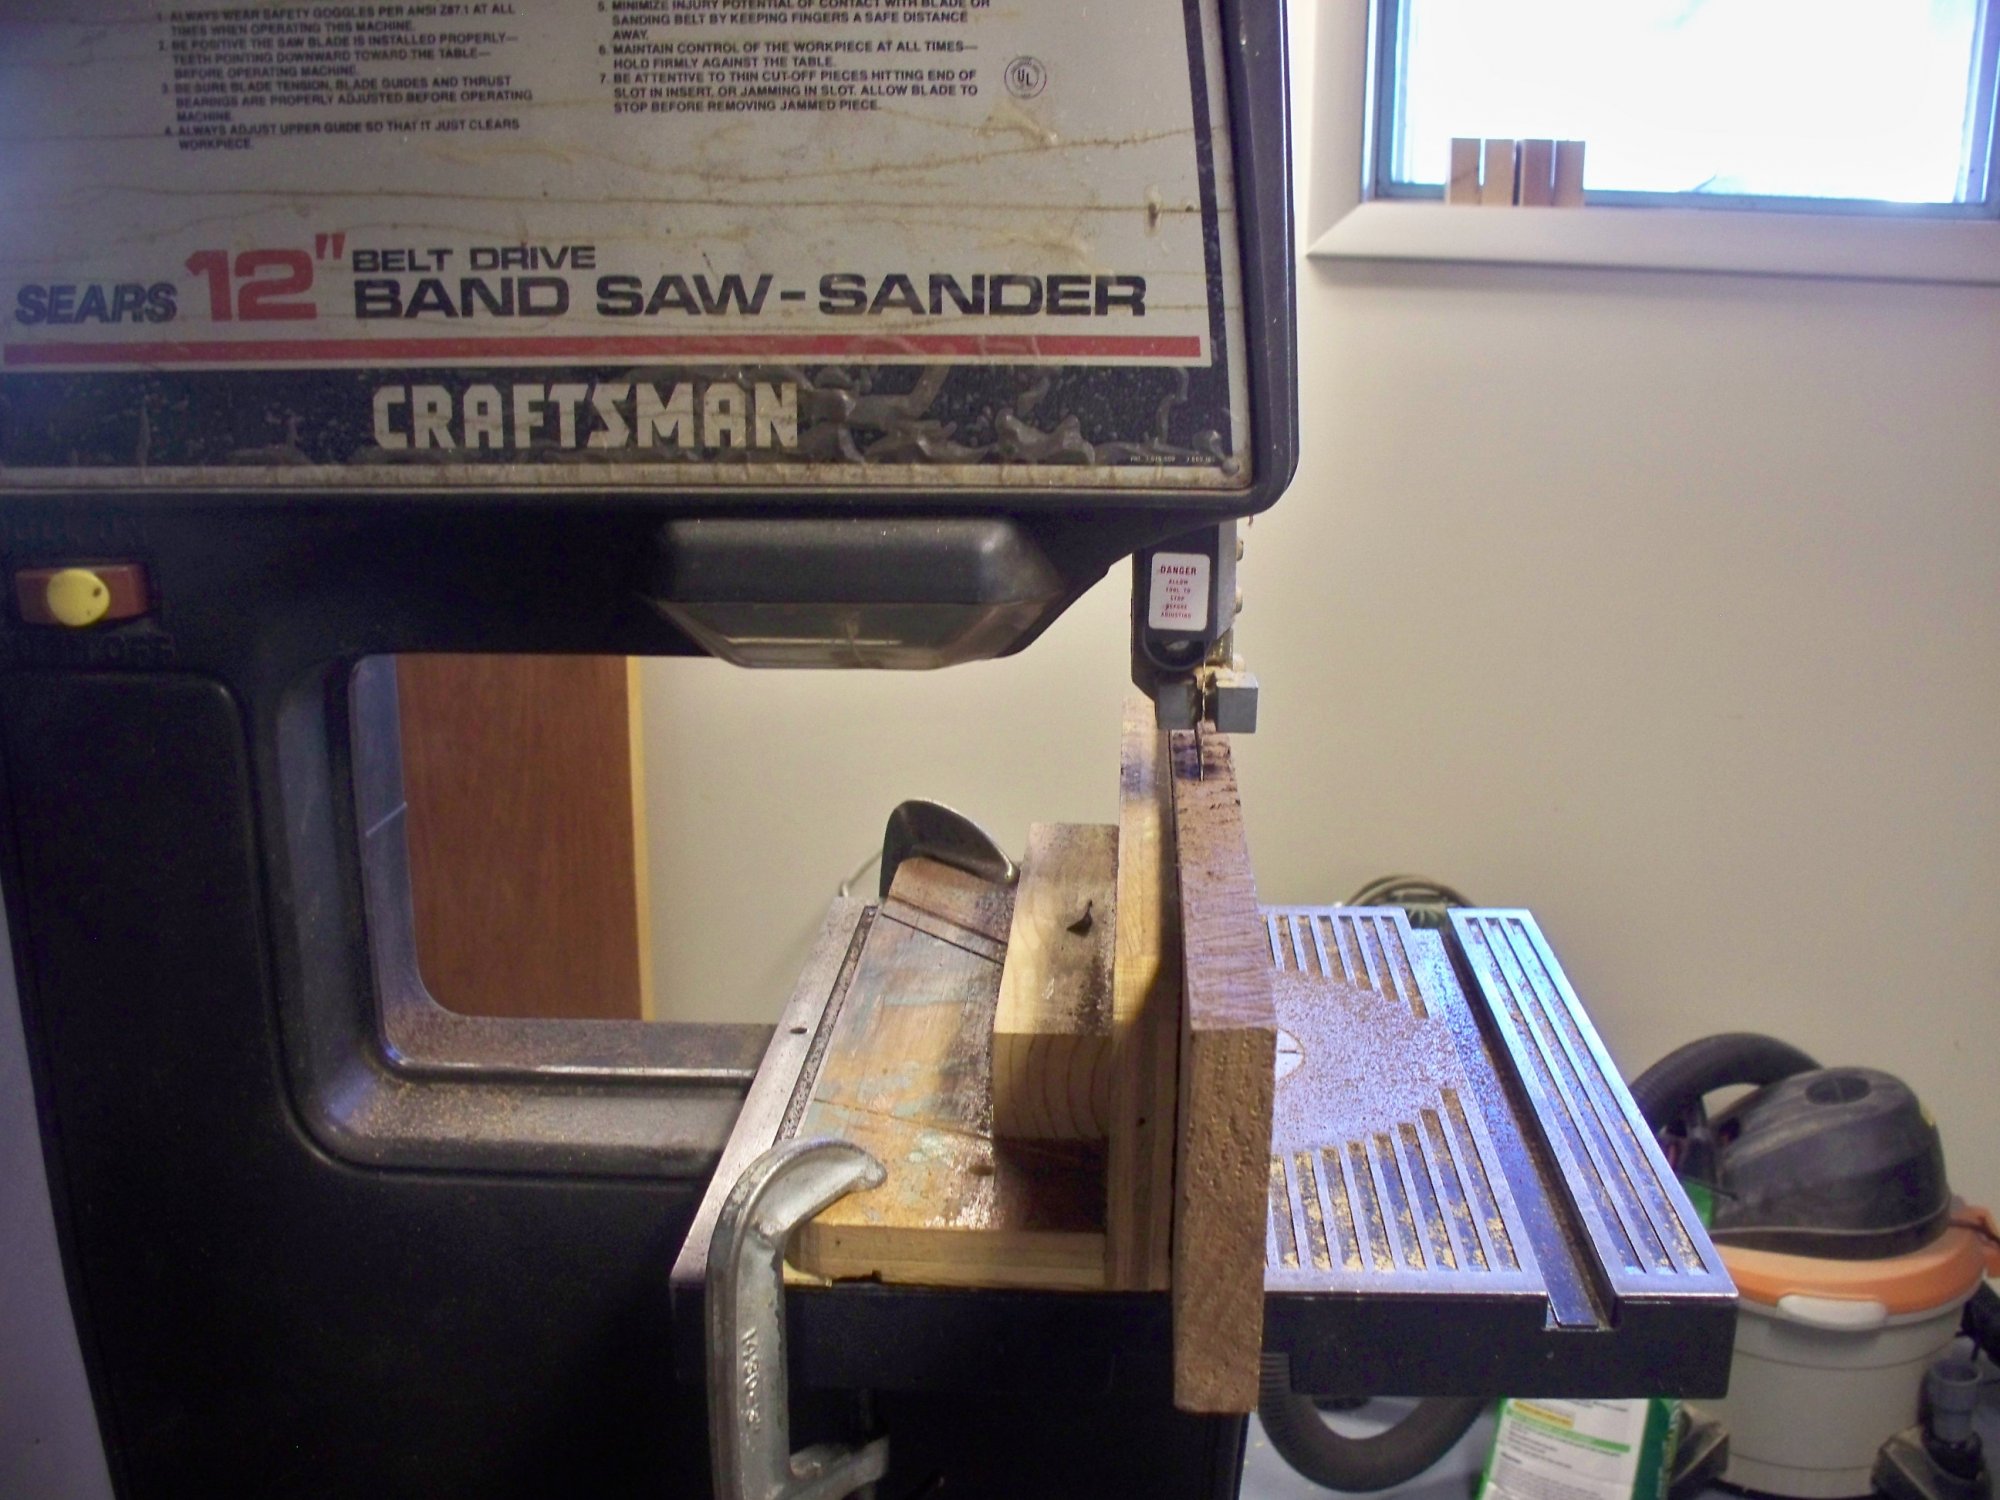 Bandsaw setup to resaw